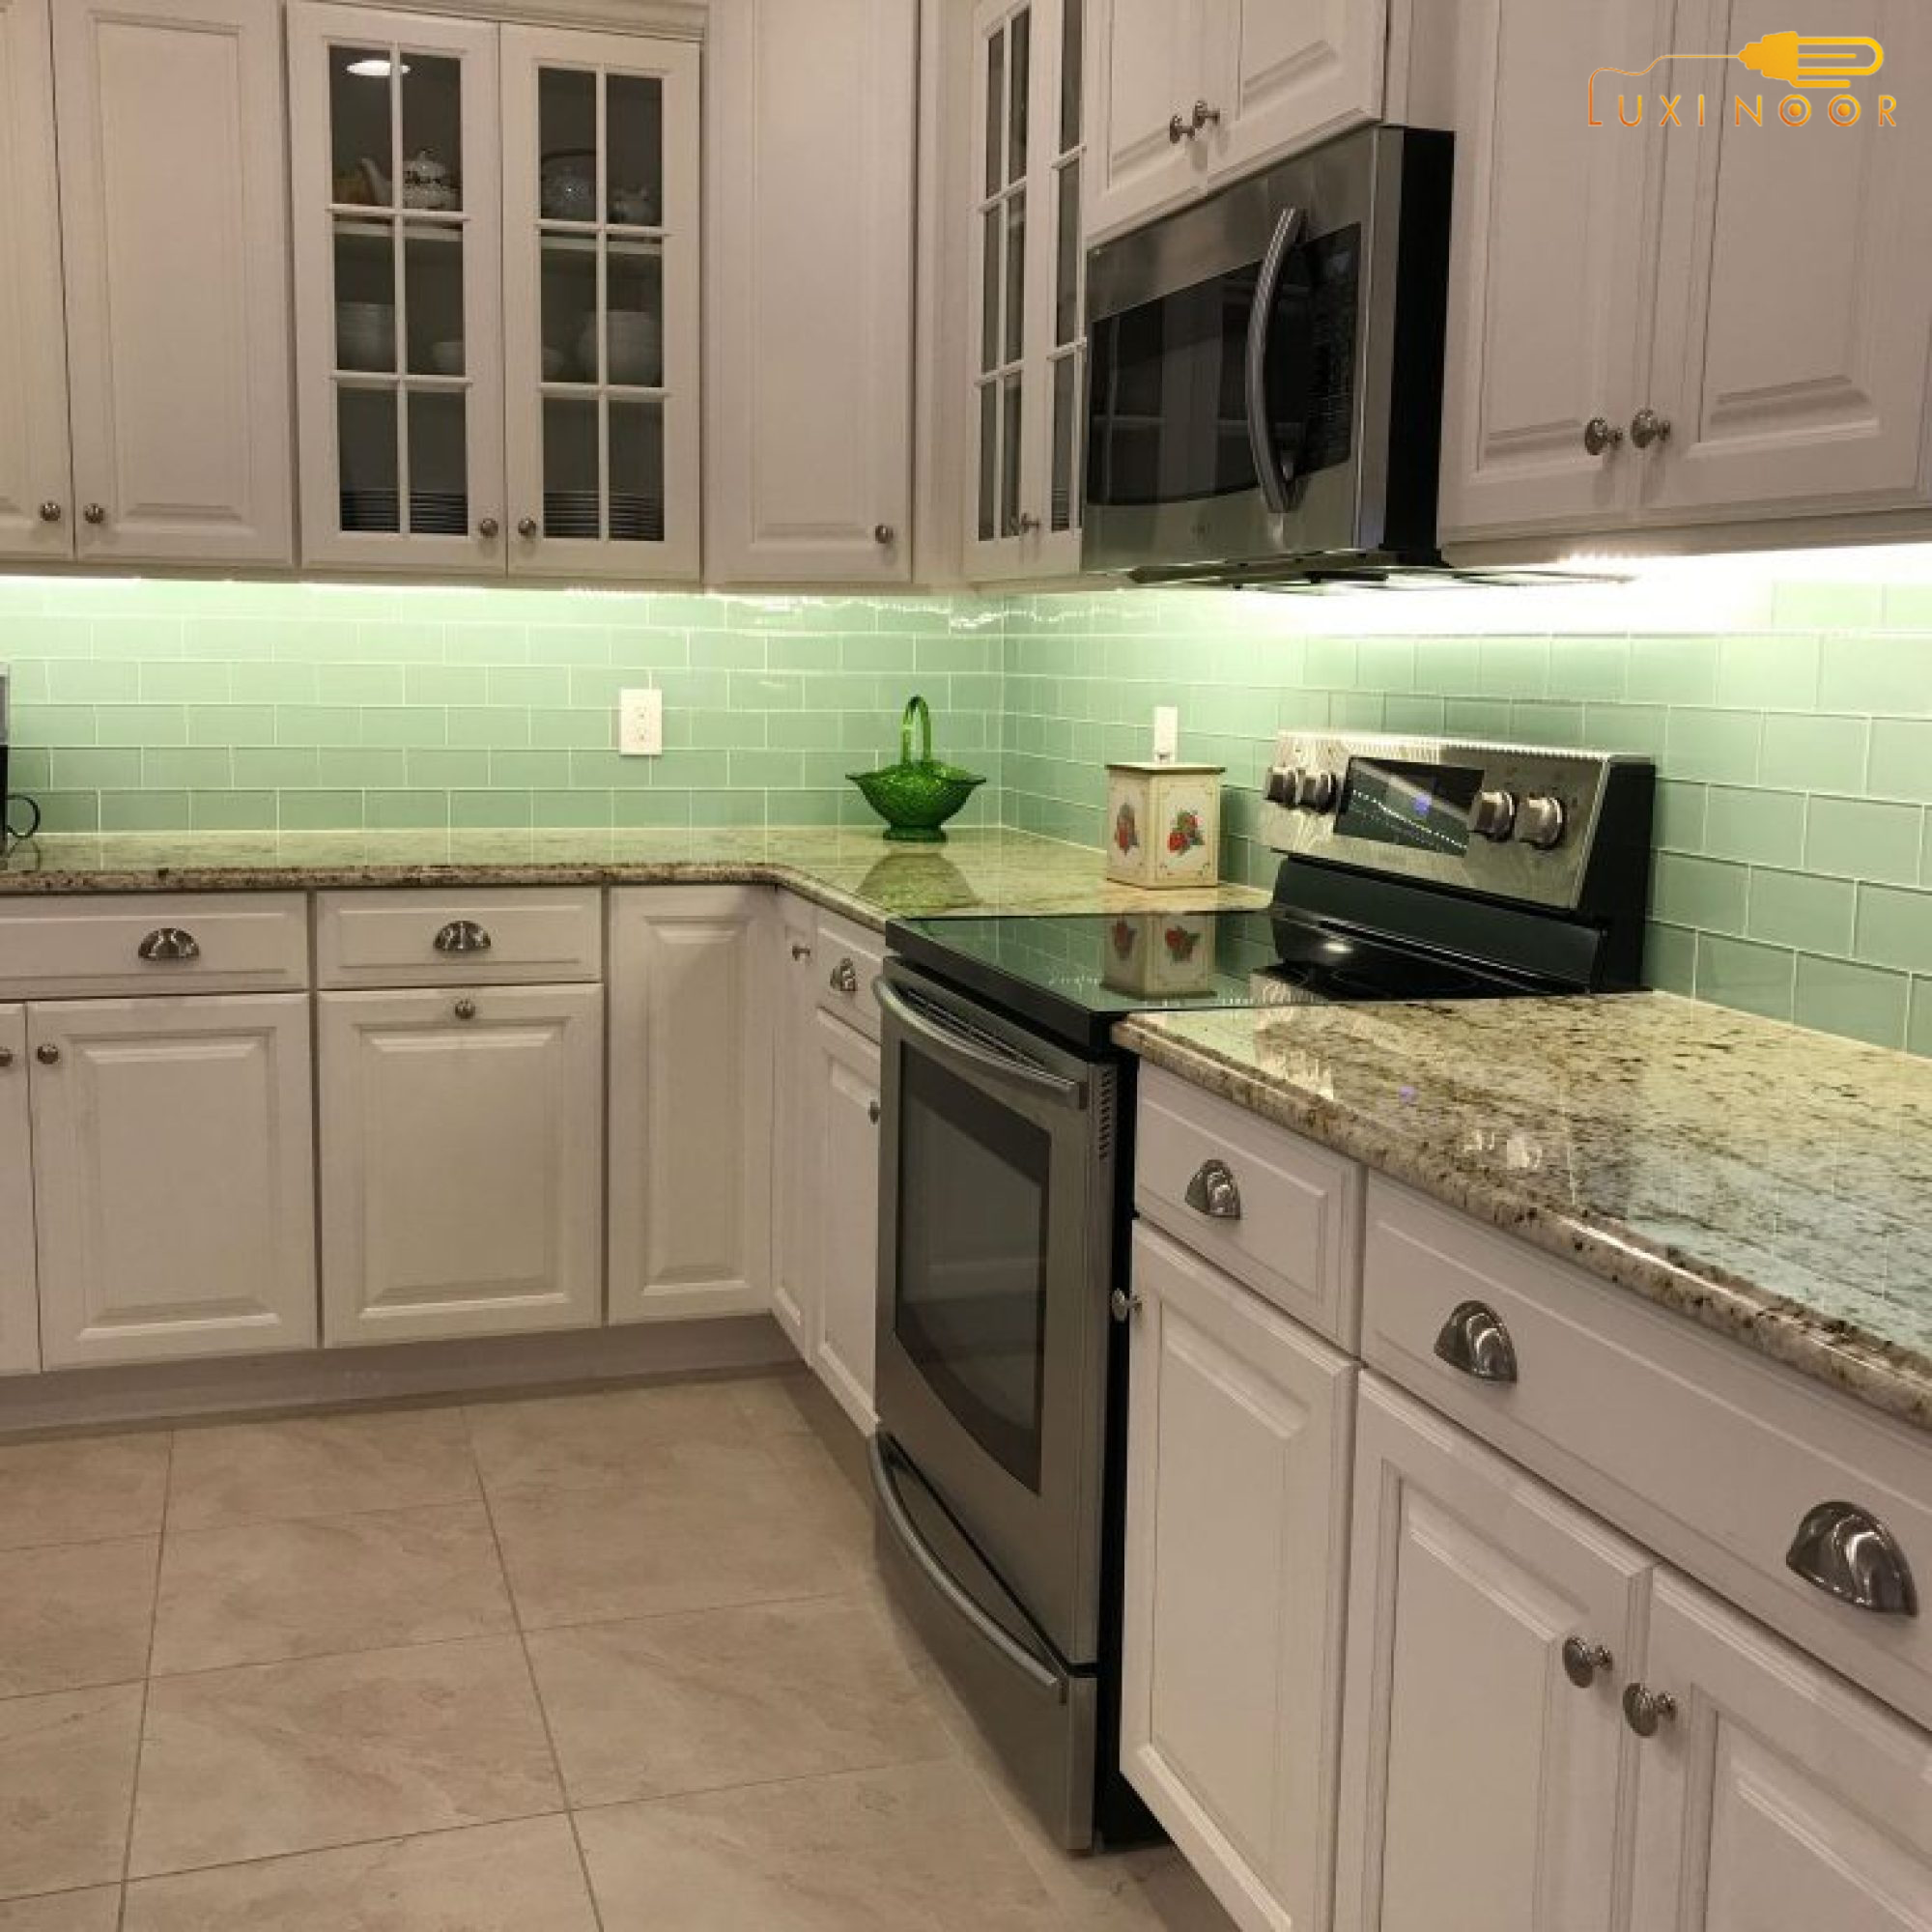 نورپردازی کابینت و کشو در آشپزخانه باعث ایجاد زیبایی در دکوراسیون می شود.